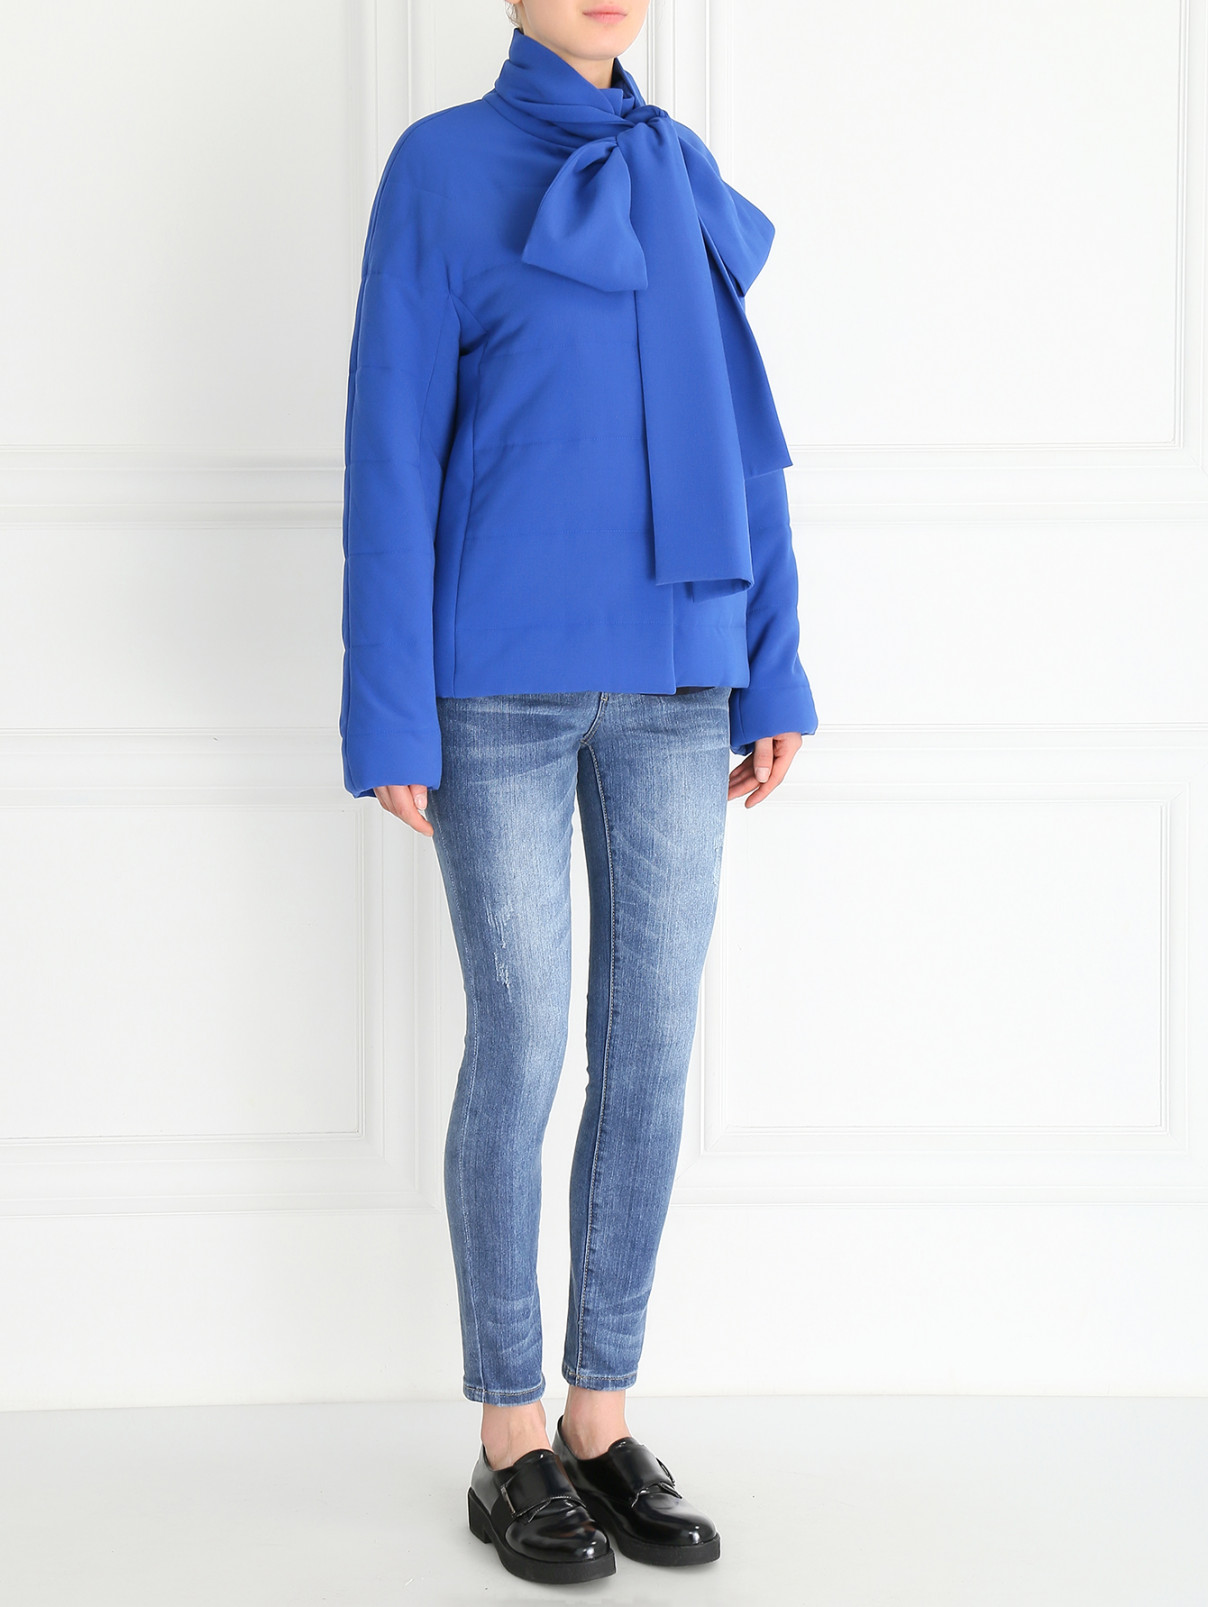 Куртка из шерсти A La Russe  –  Модель Общий вид  – Цвет:  Синий